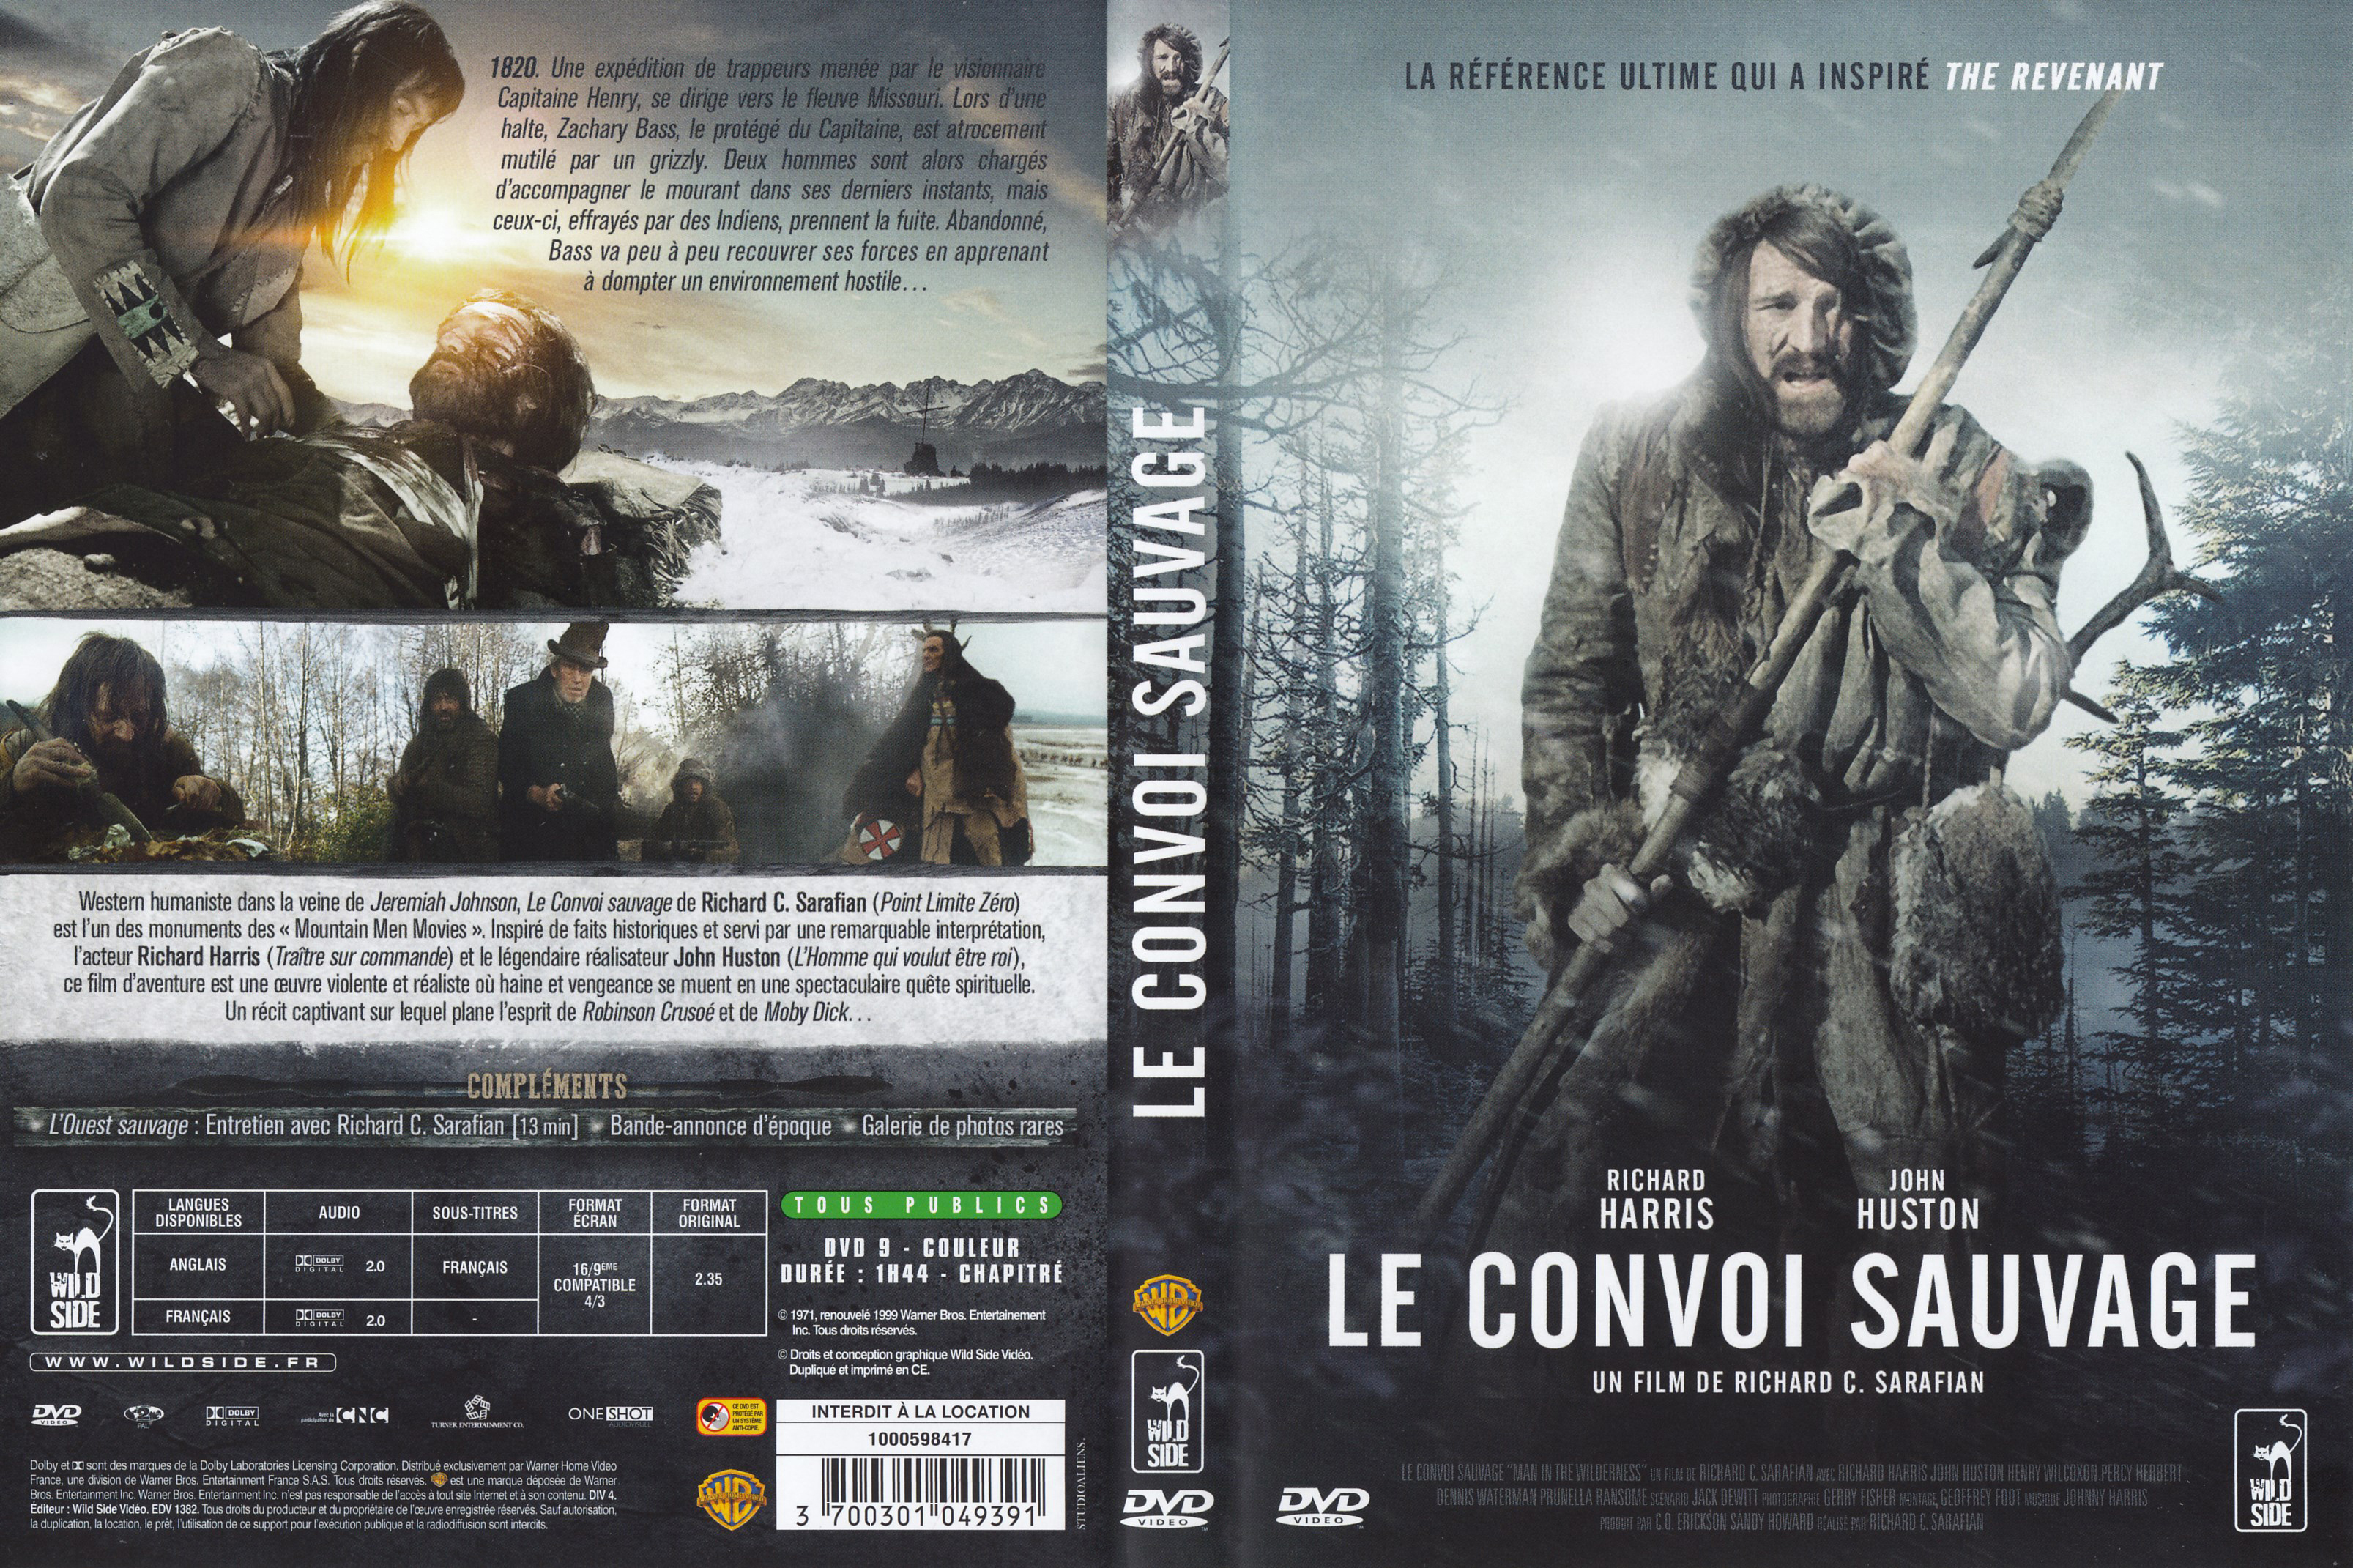 Jaquette DVD Le convoi sauvage